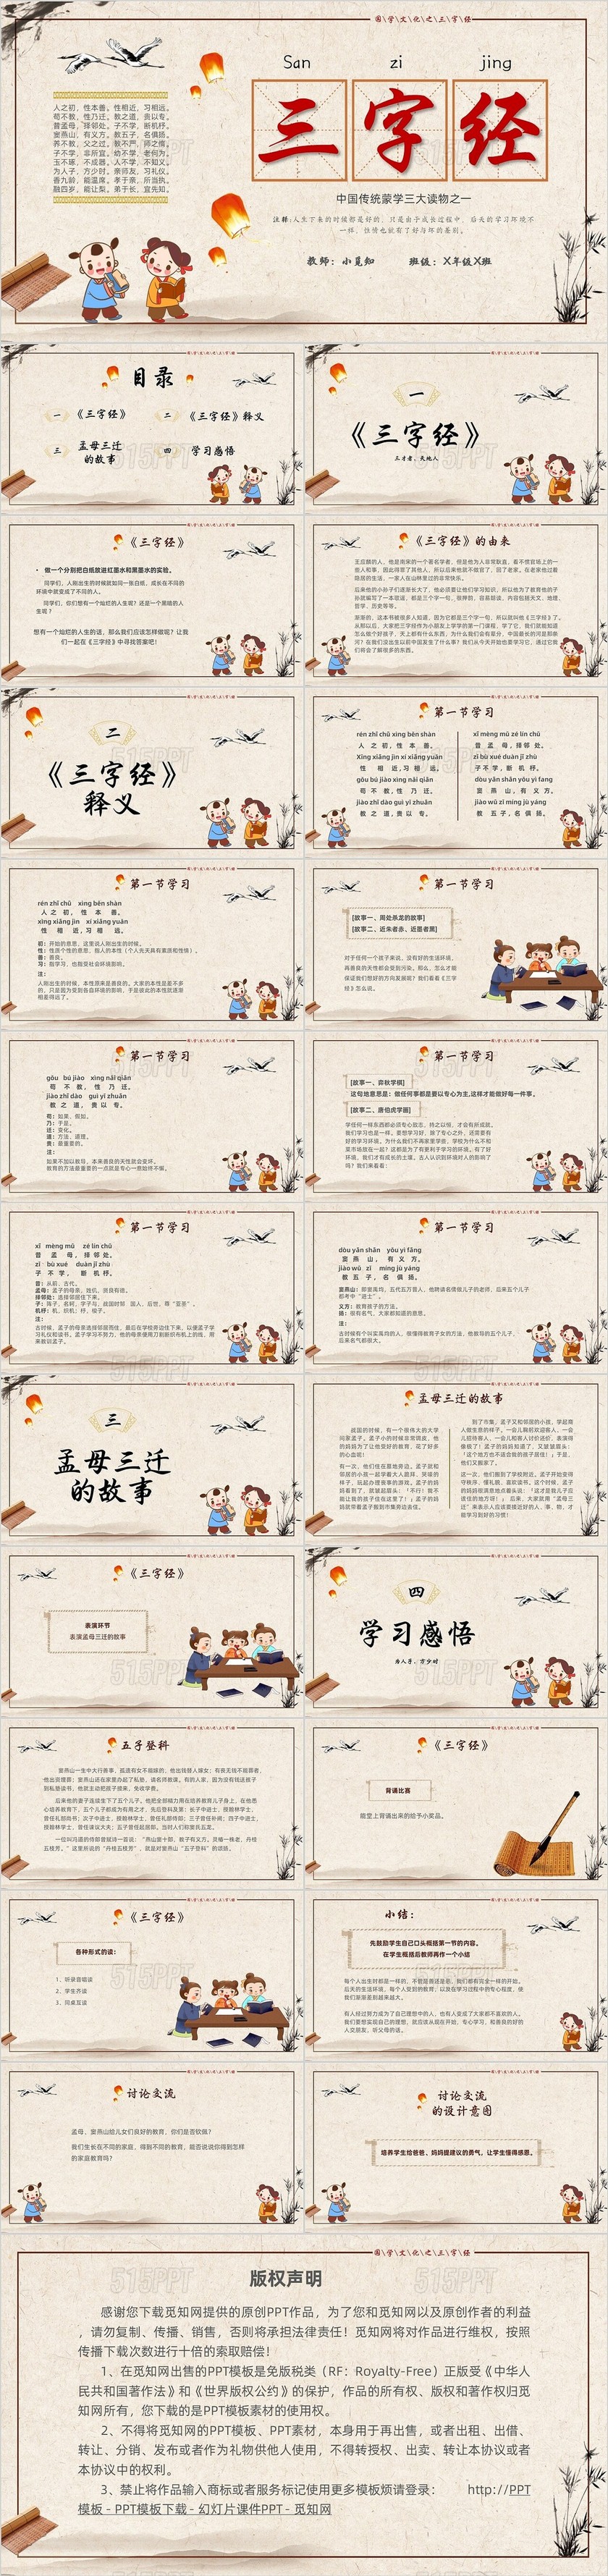 黄色复古风三字经中国传统文化宣传PPT国学